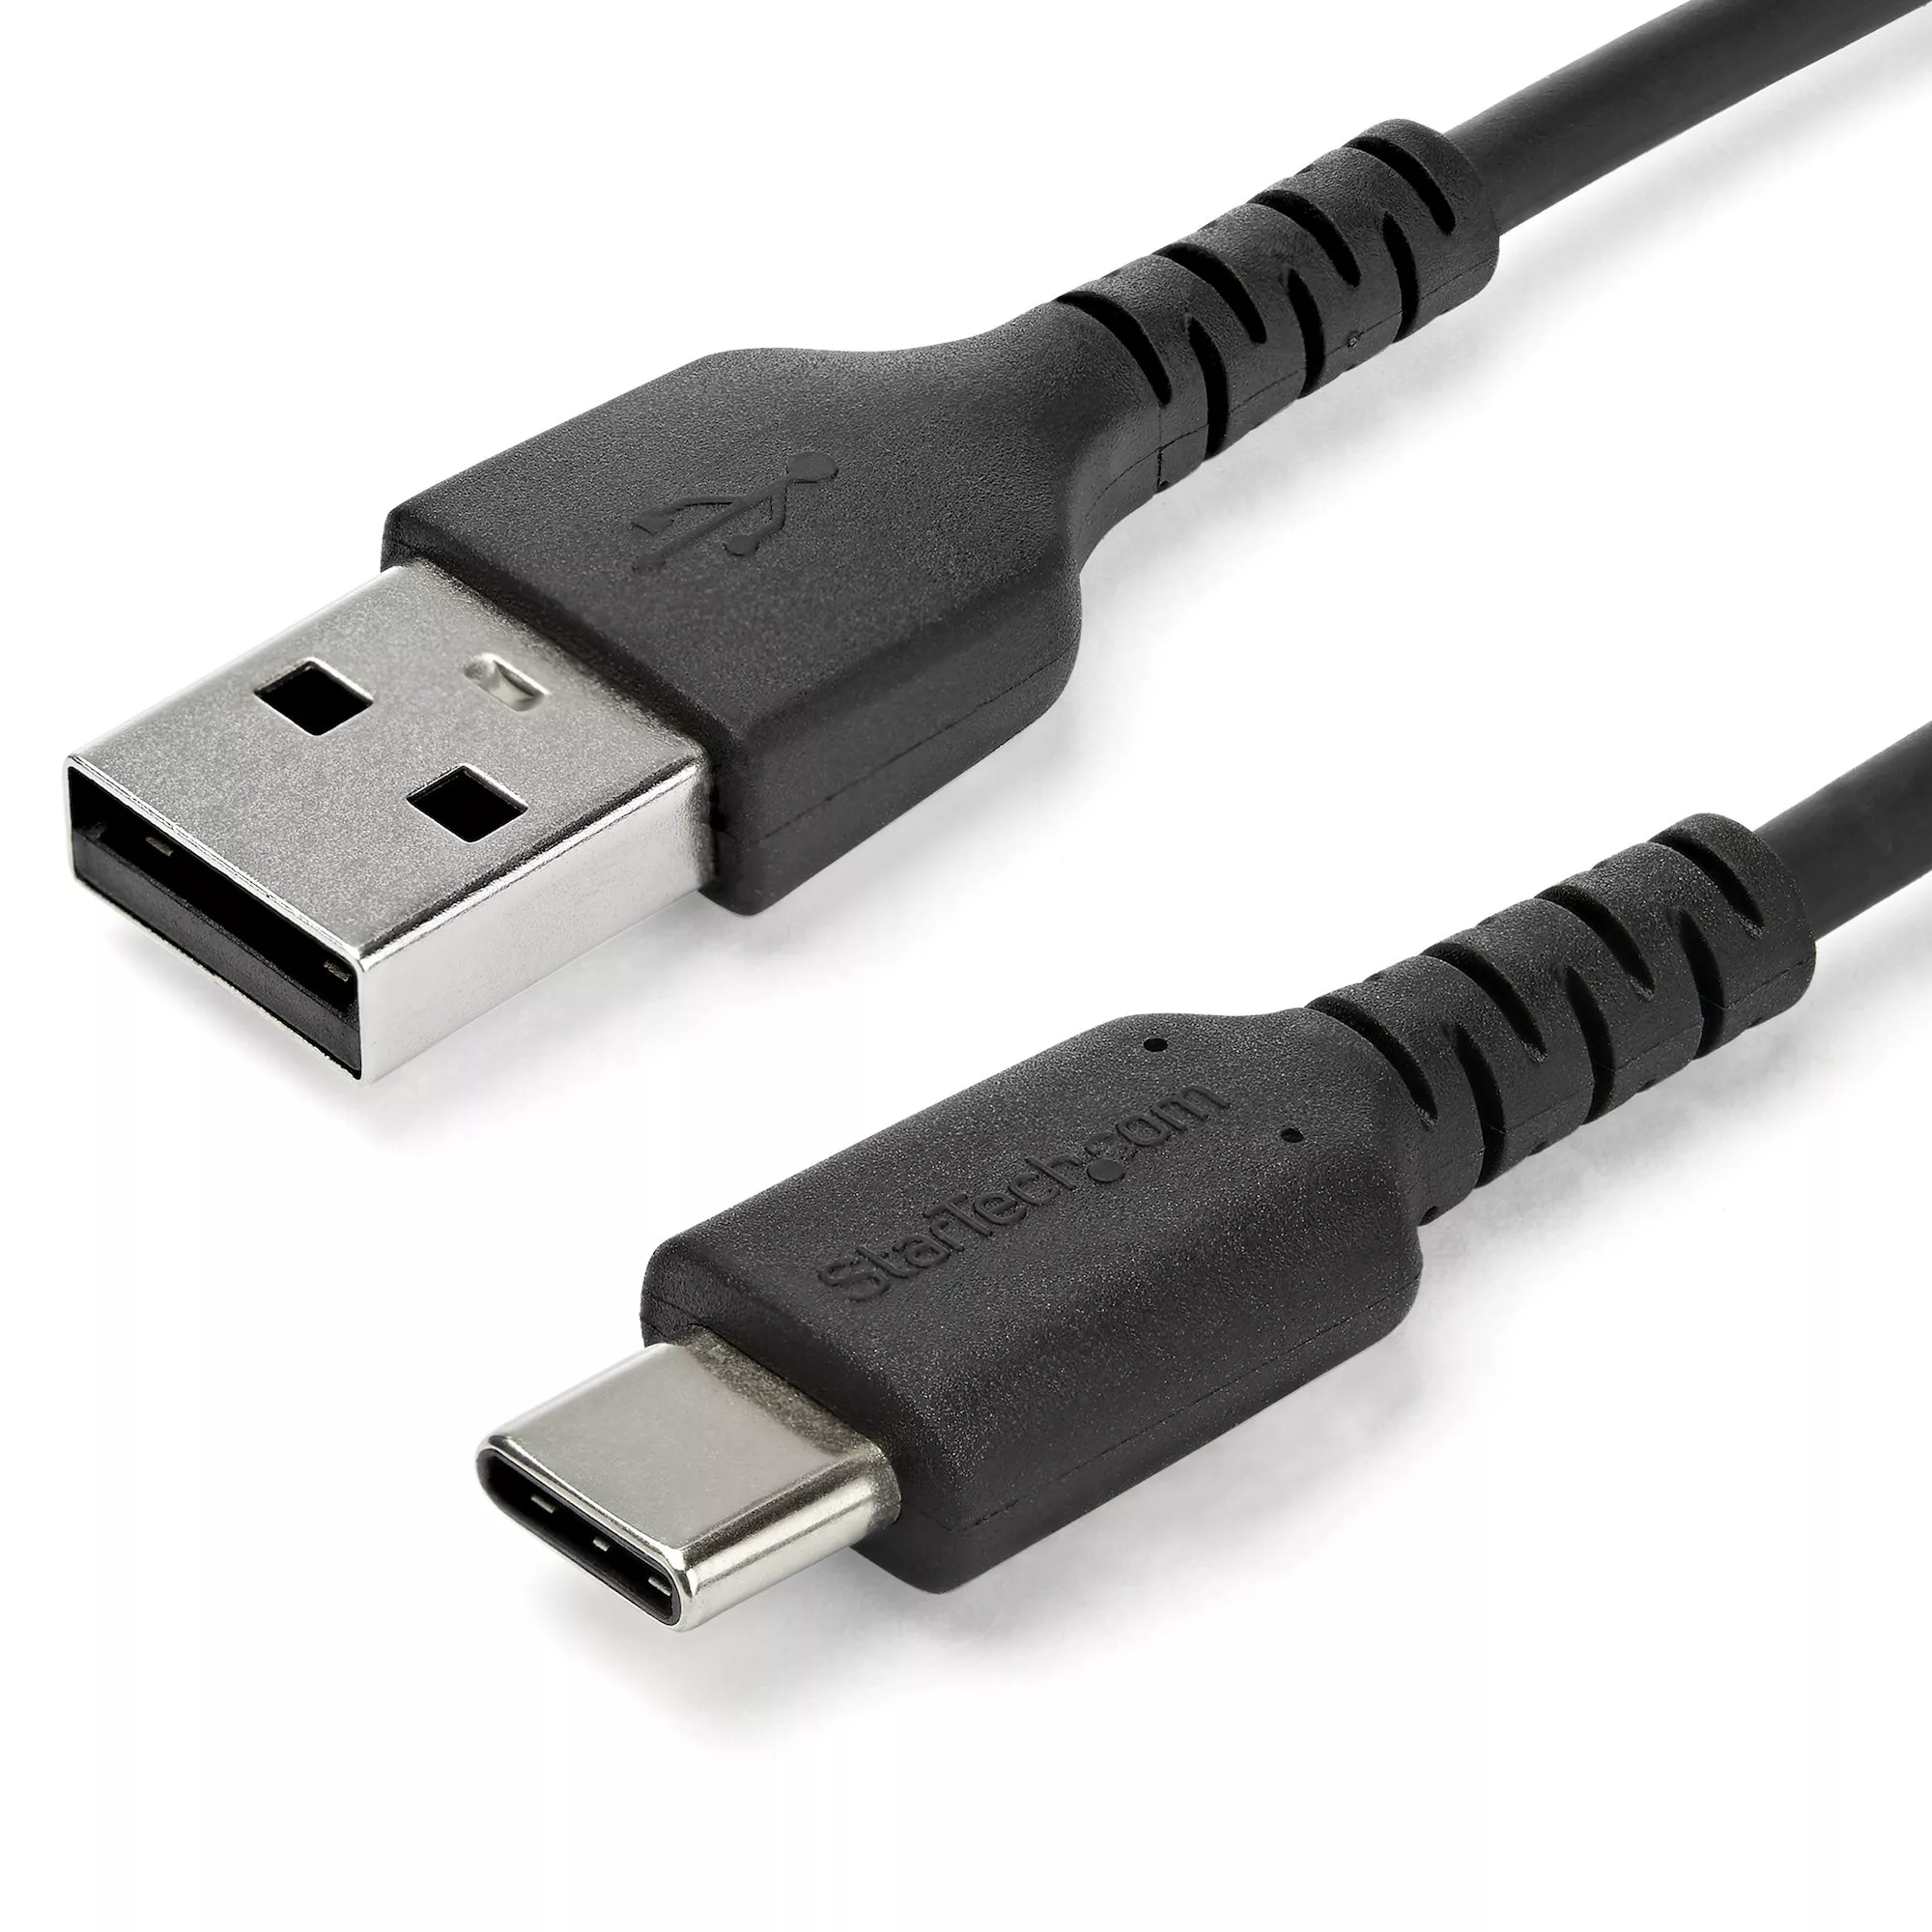 Achat StarTech.com Câble USB-C vers USB 2.0 de 2 m - Noir - 0065030886642